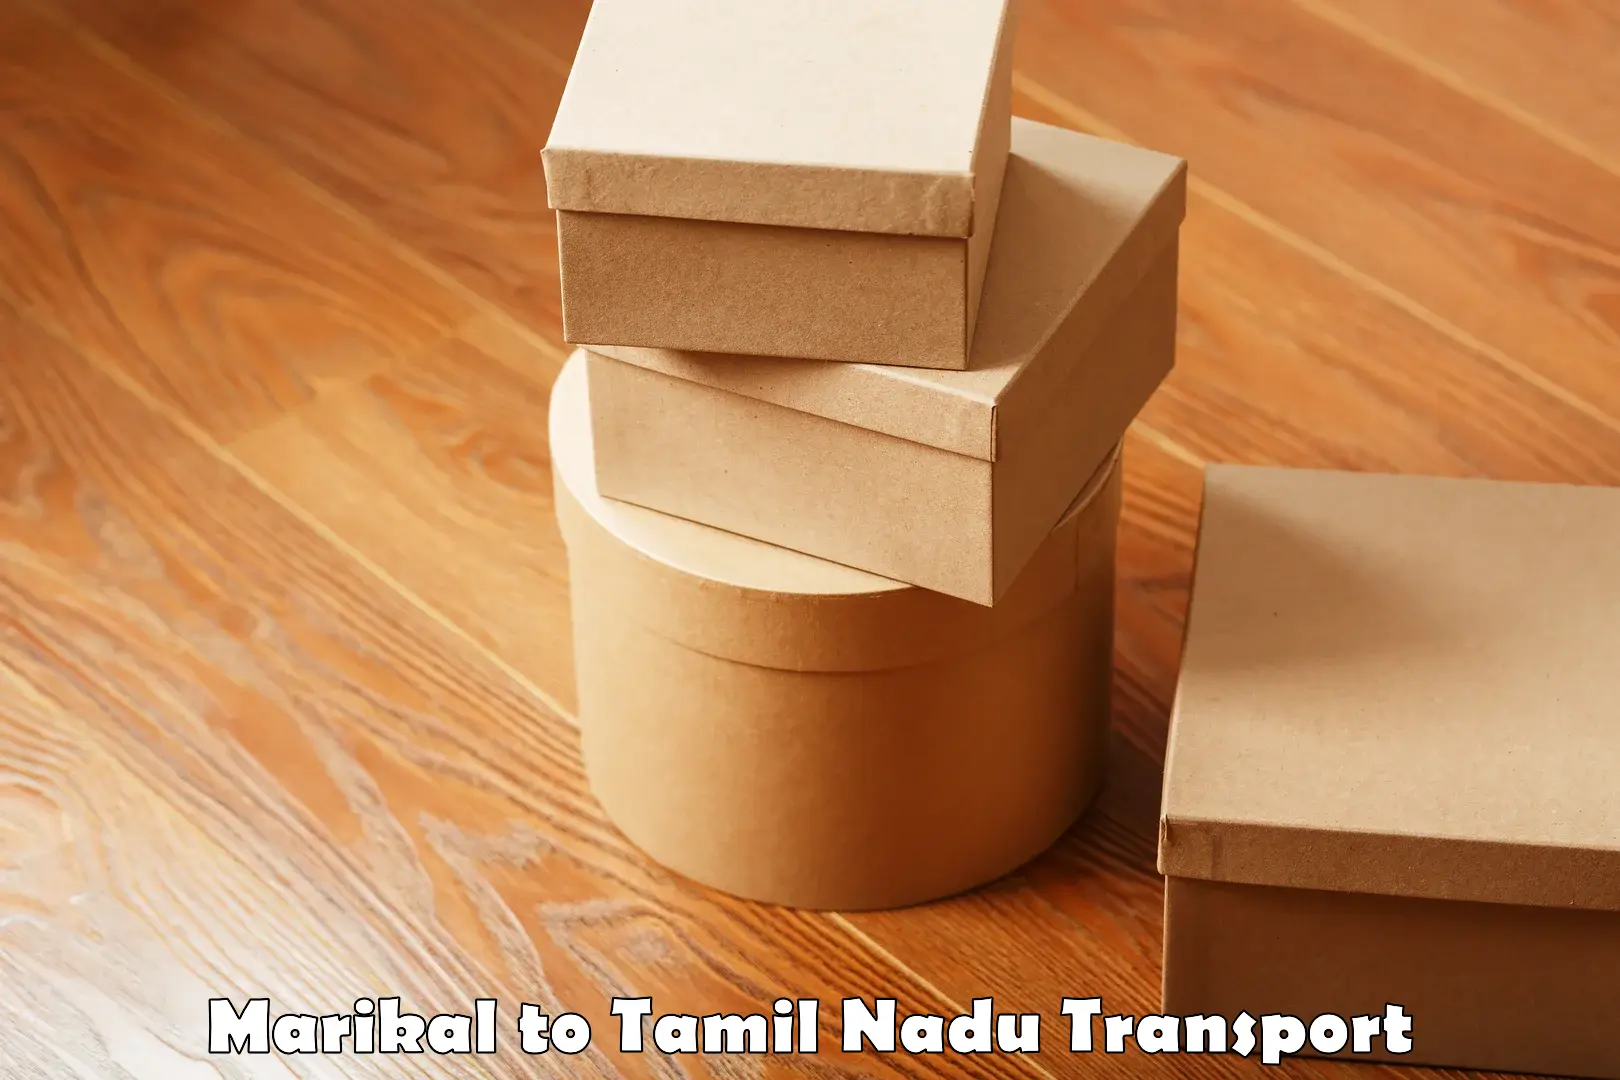 Air freight transport services Marikal to Tiruturaipundi